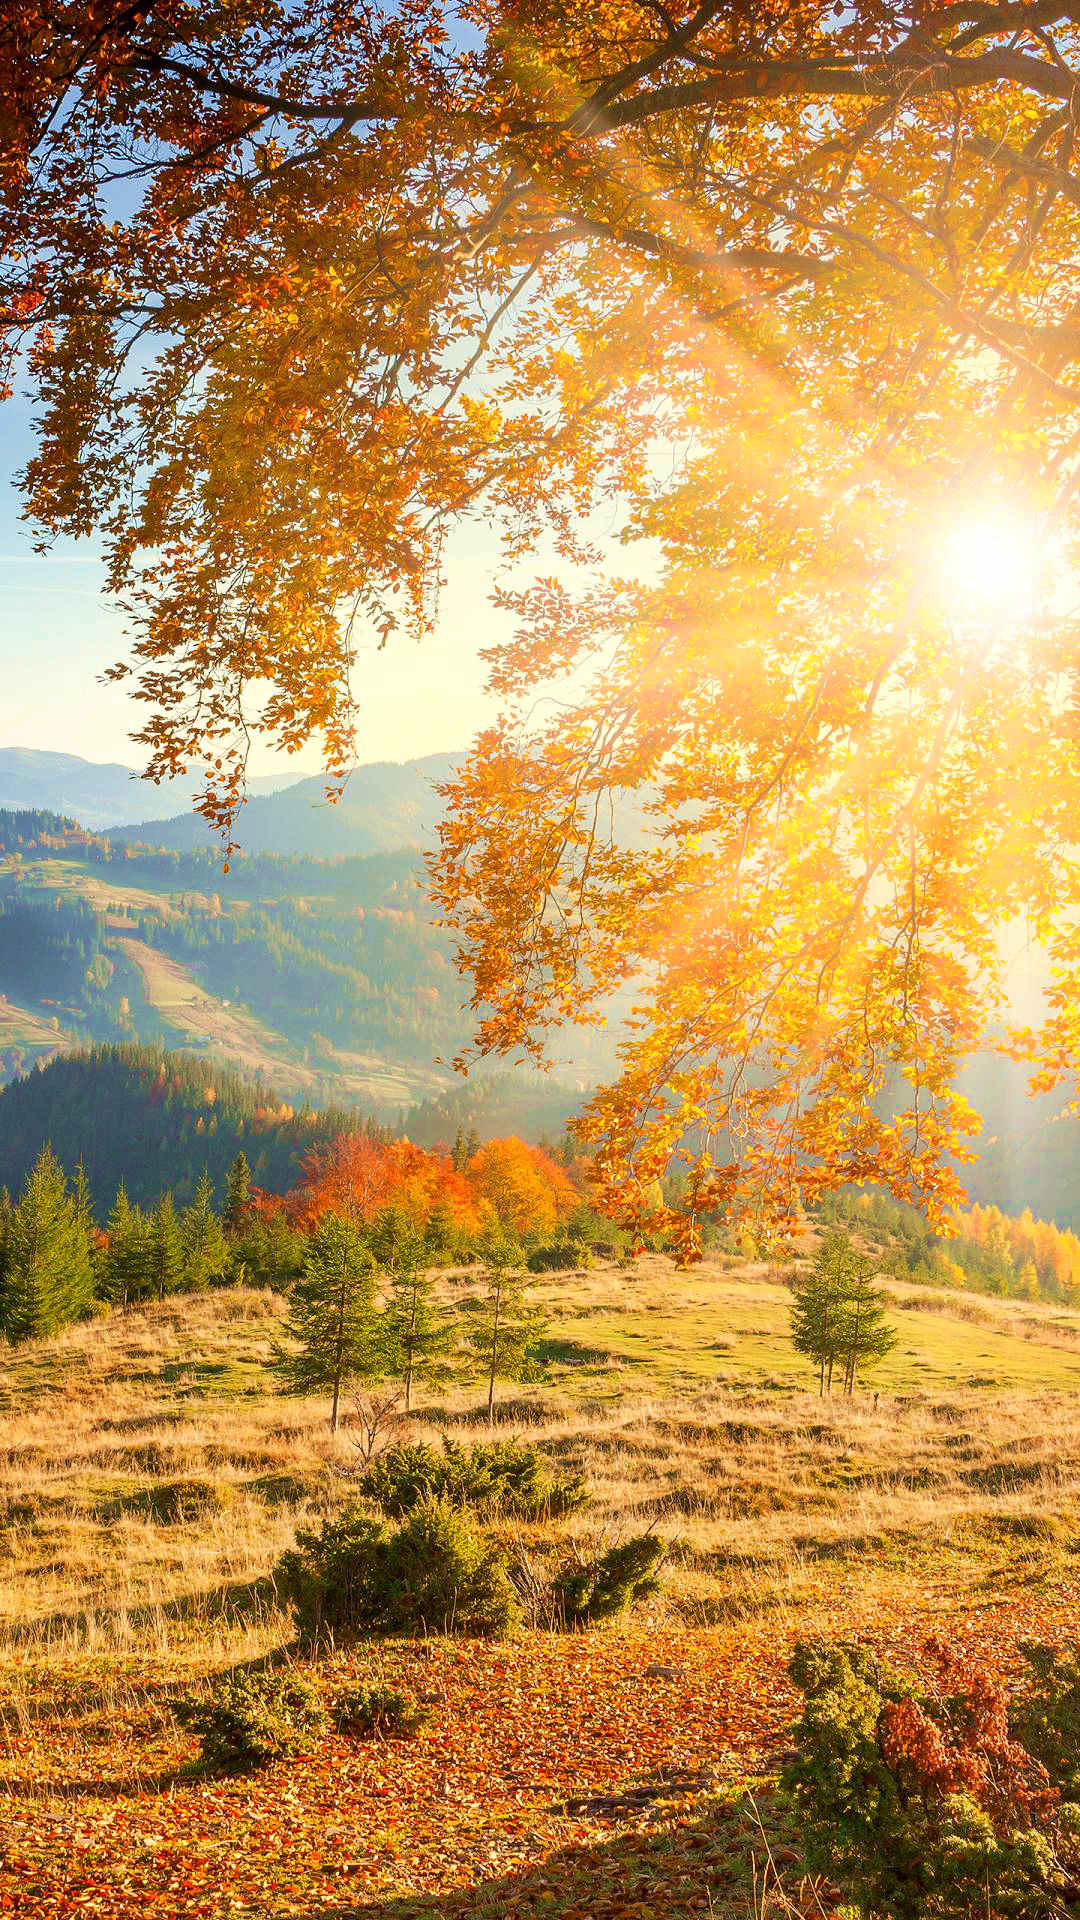 【秋之韵】漫步于秋,金色的阳光透过树缝洒落在草地上,林间片片秋叶